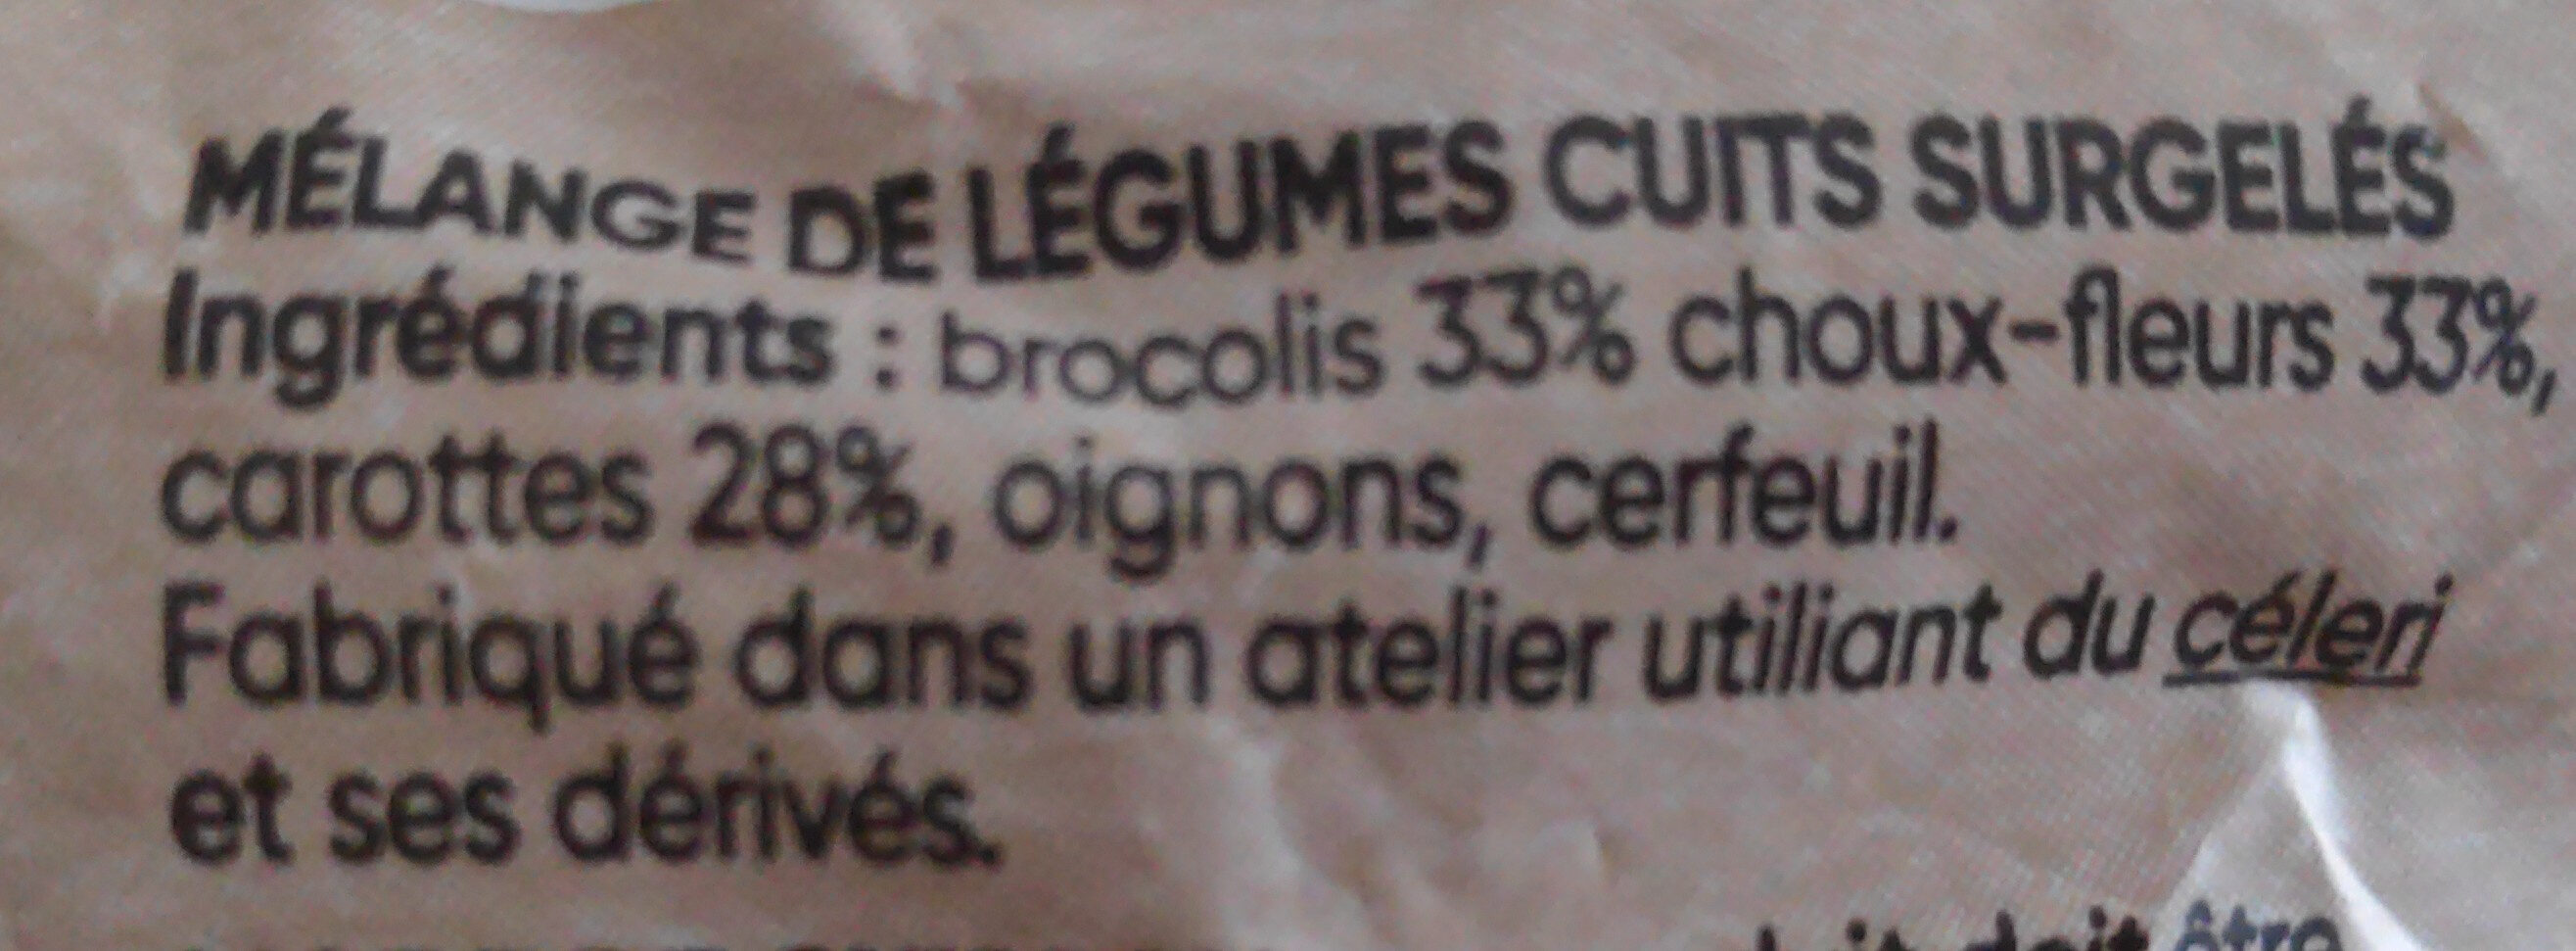 Brocolis, Choux-fleurs & Carottes - Ingrédients